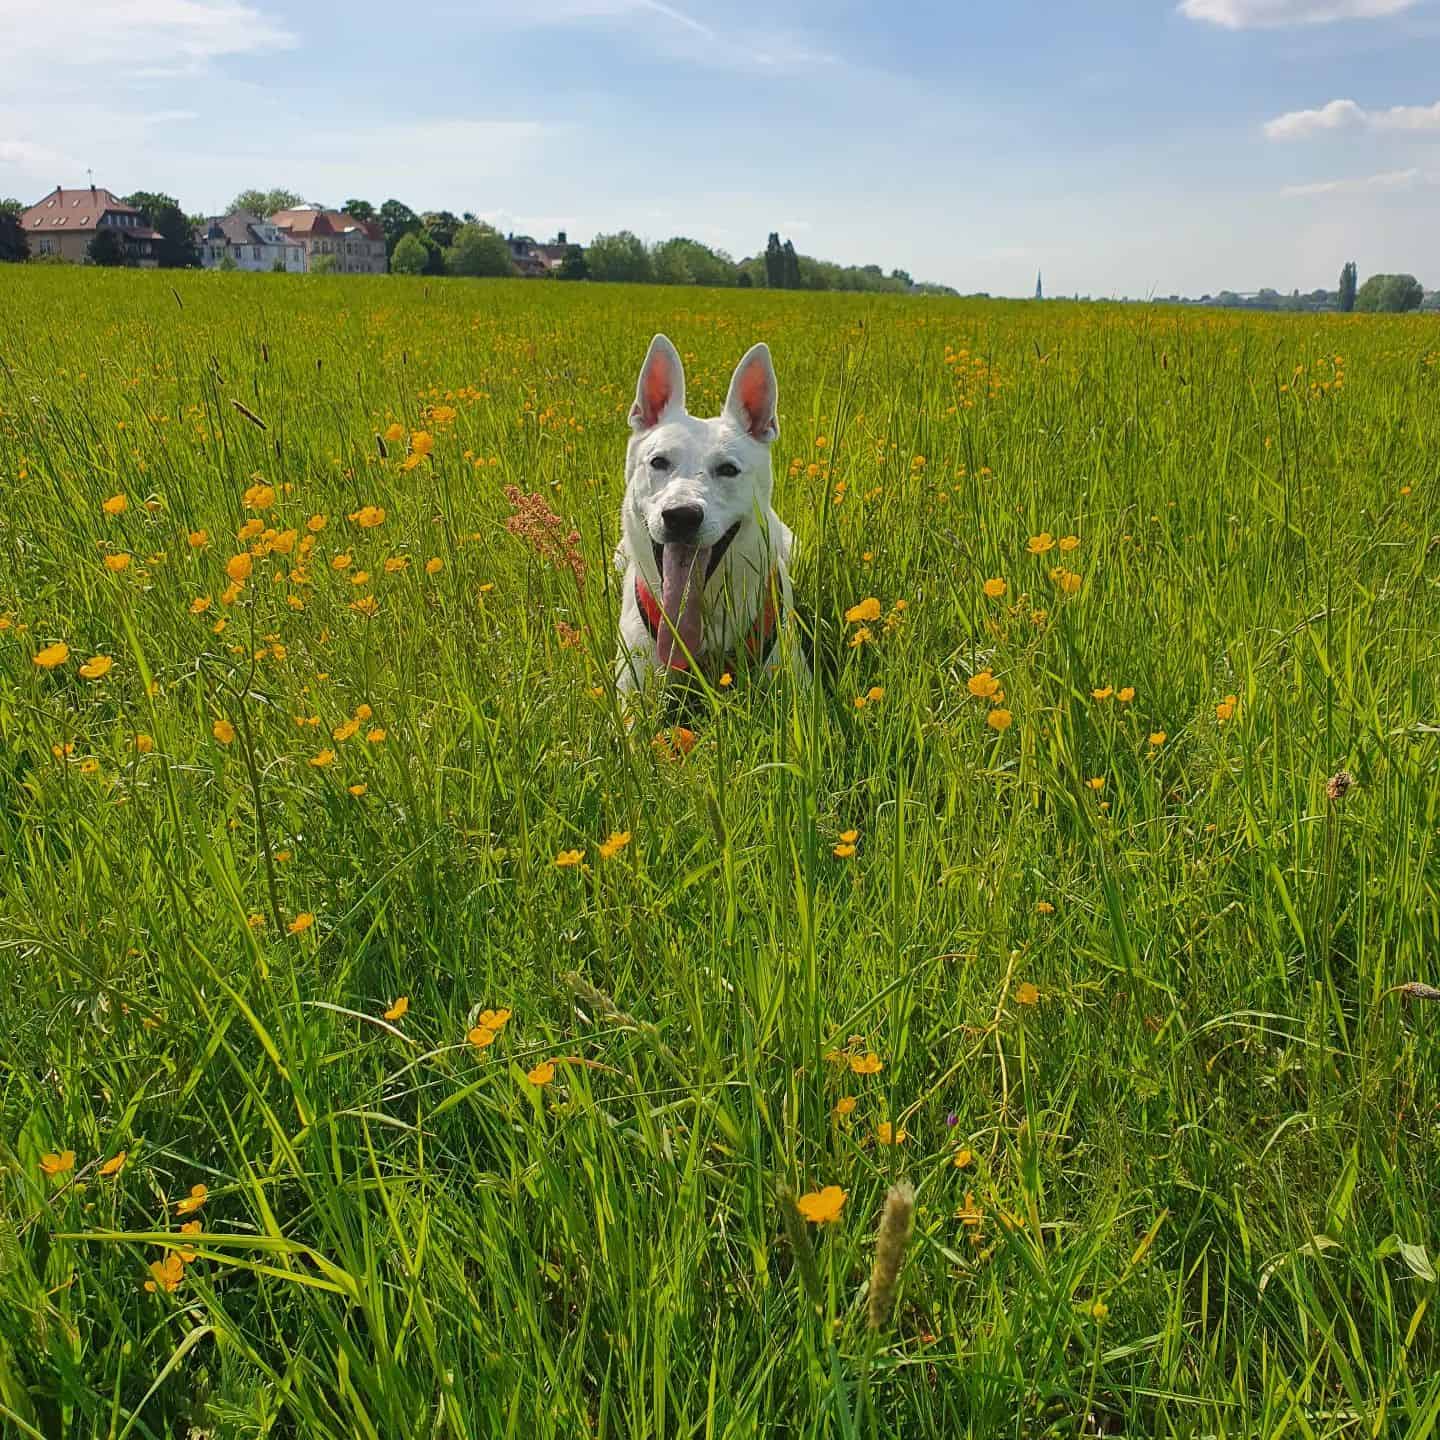 White American Shepherd in a field